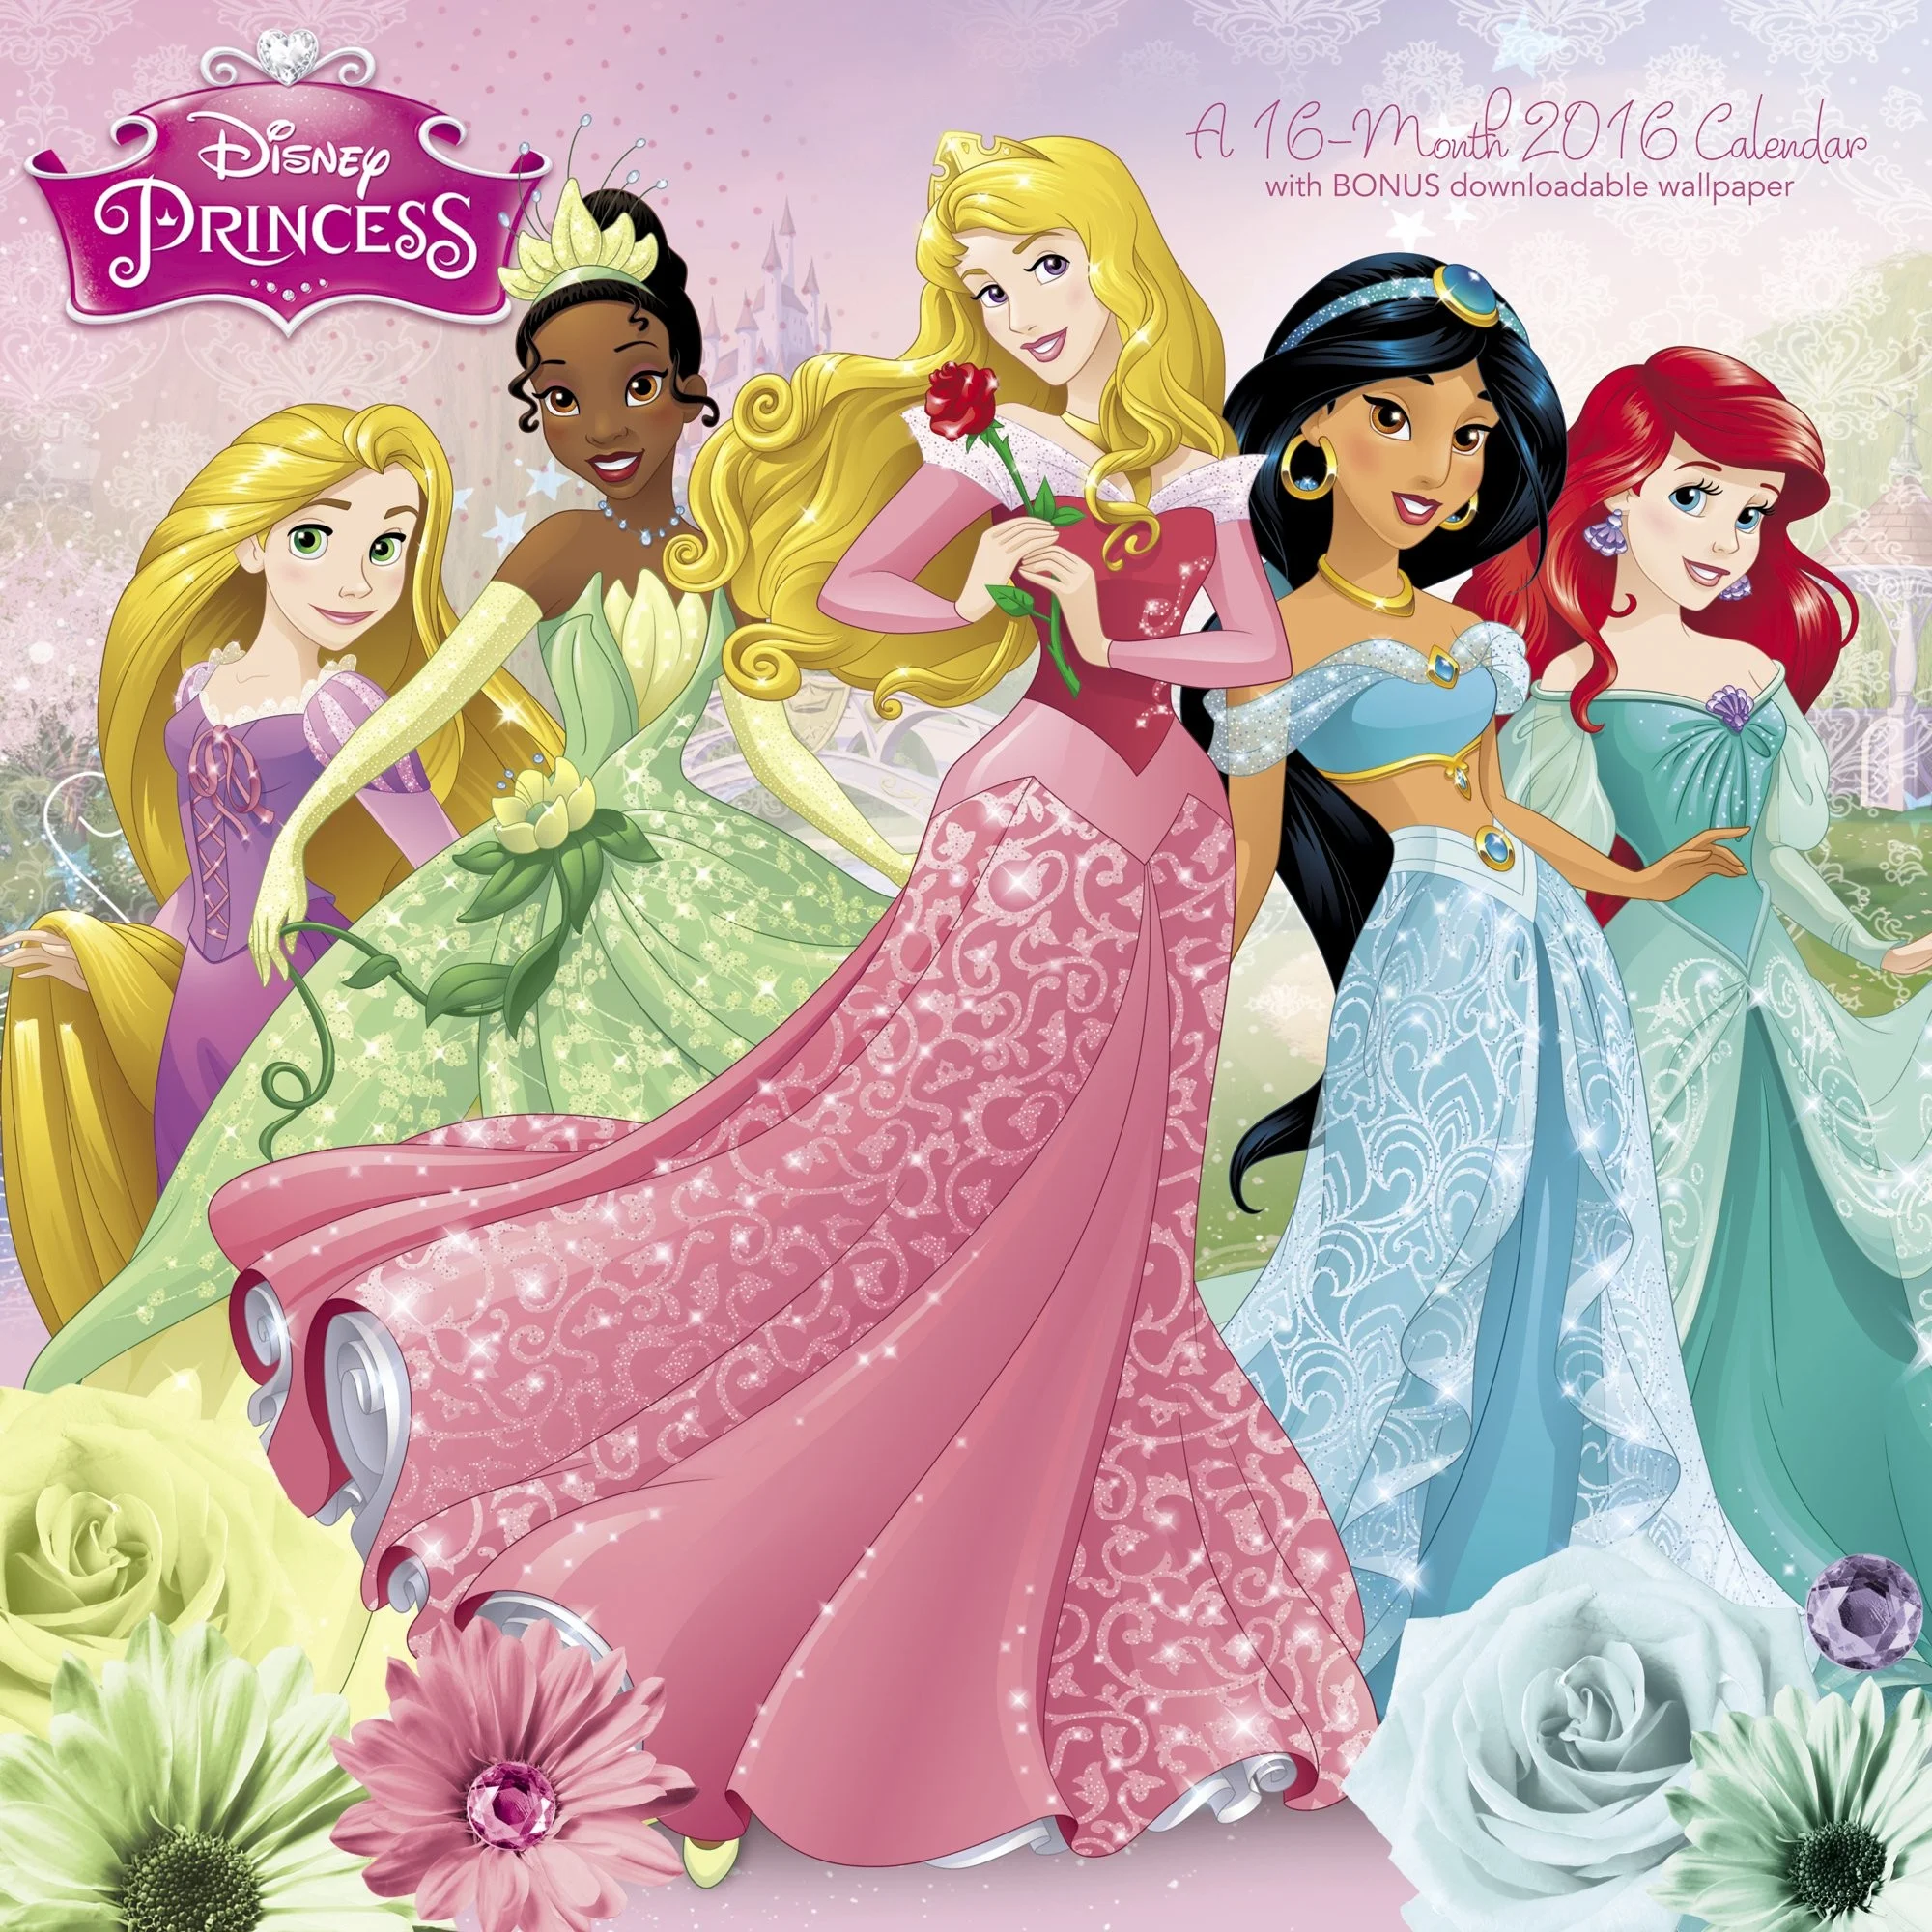 Disney Princess Wall Calendar 2016 Day Dream 9781629051796 Amazon.com Books